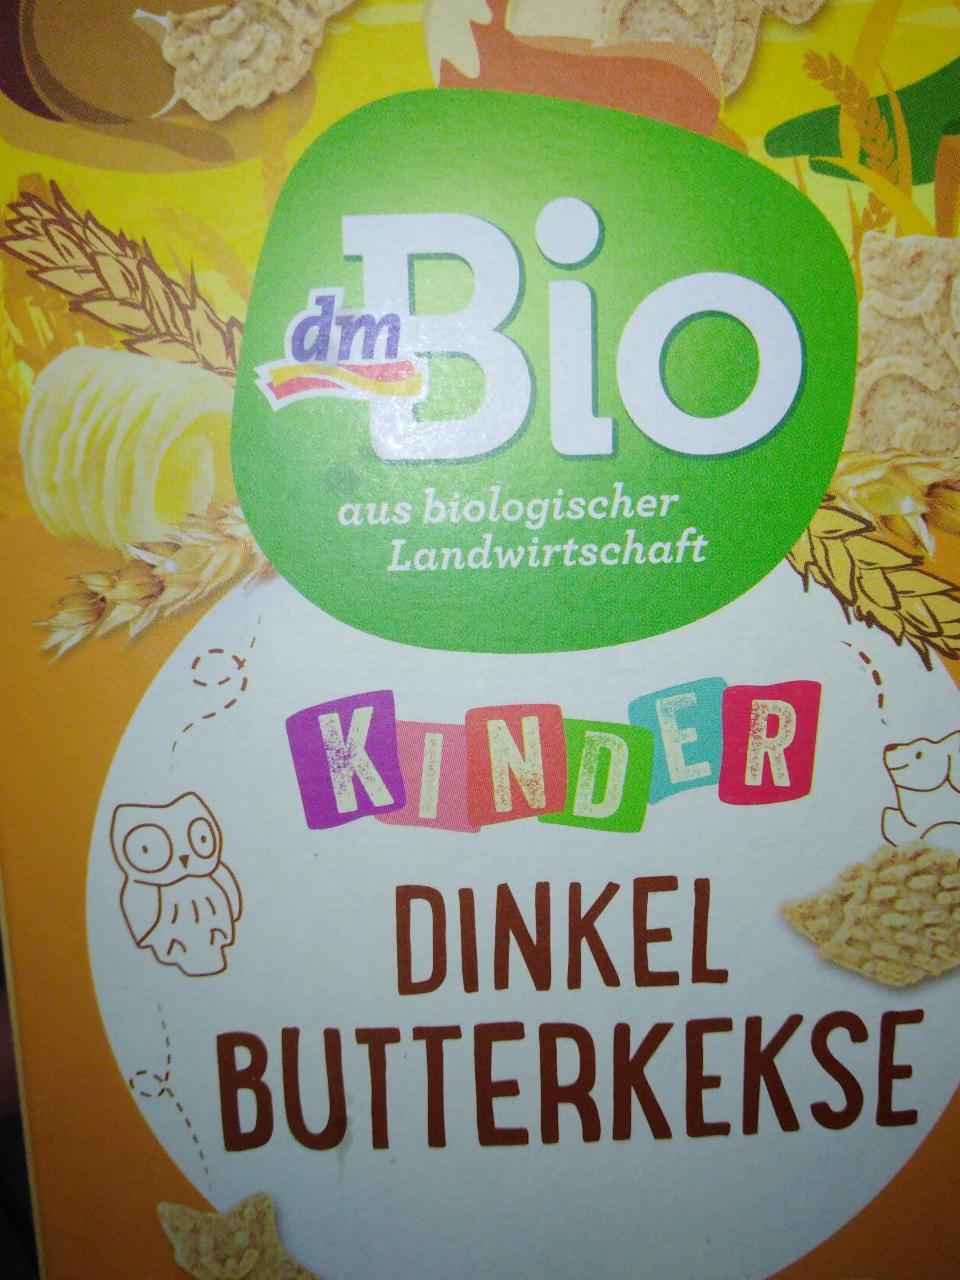 Fotografie - kinder Dinkel Butterkekse špaldové máslové sušenky dmBio